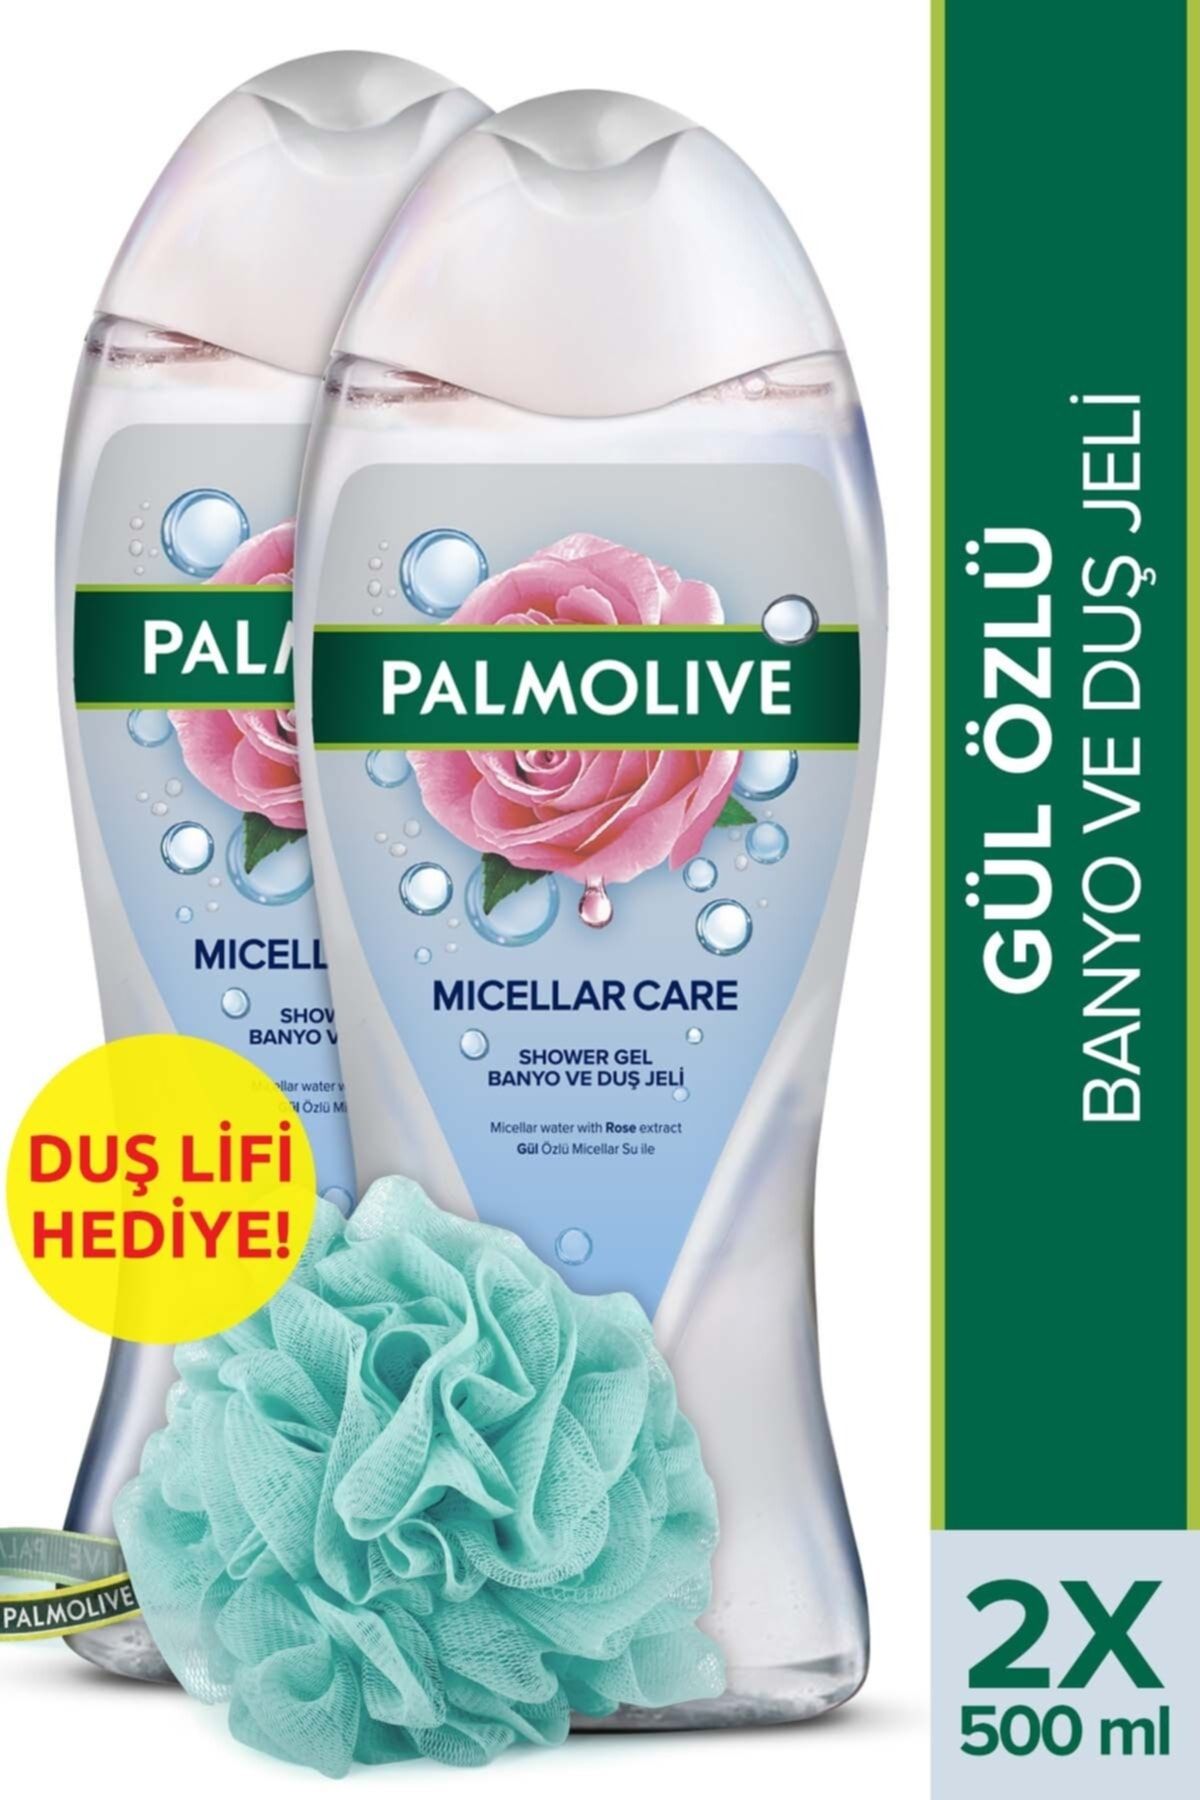 Palmolive Micellar Care Gül Özlü Micellar Su ile Banyo ve Duş Jeli 500 ml x 2 Adet + Duş Lifi Hediye